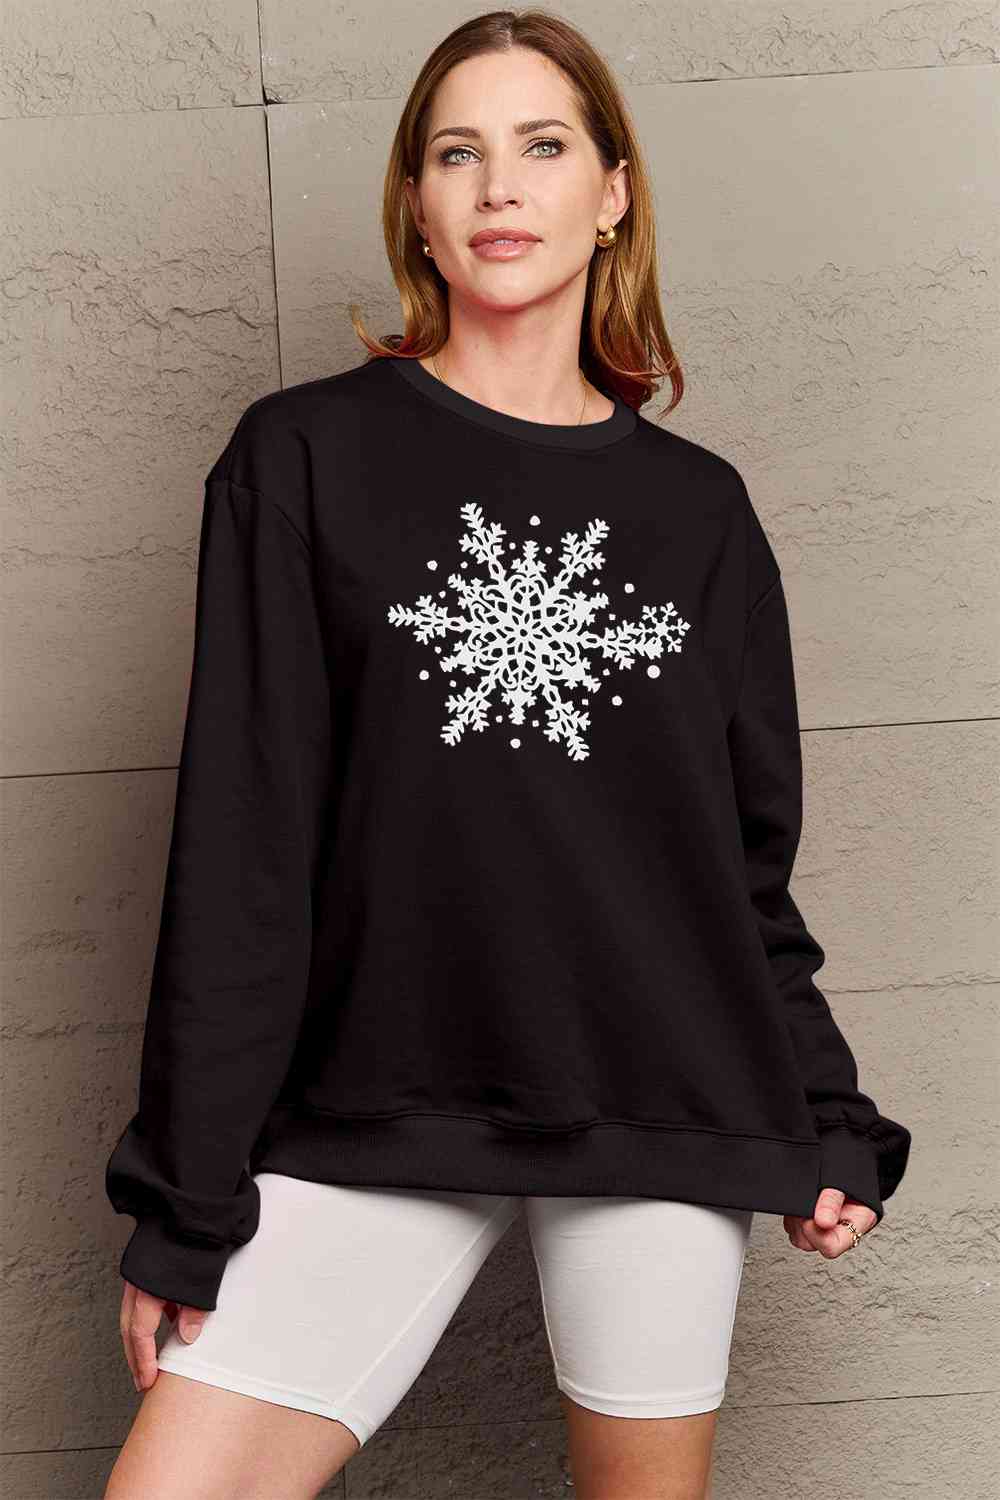 Simply Love - Sweat-shirt avec motif flocon de neige pleine taille